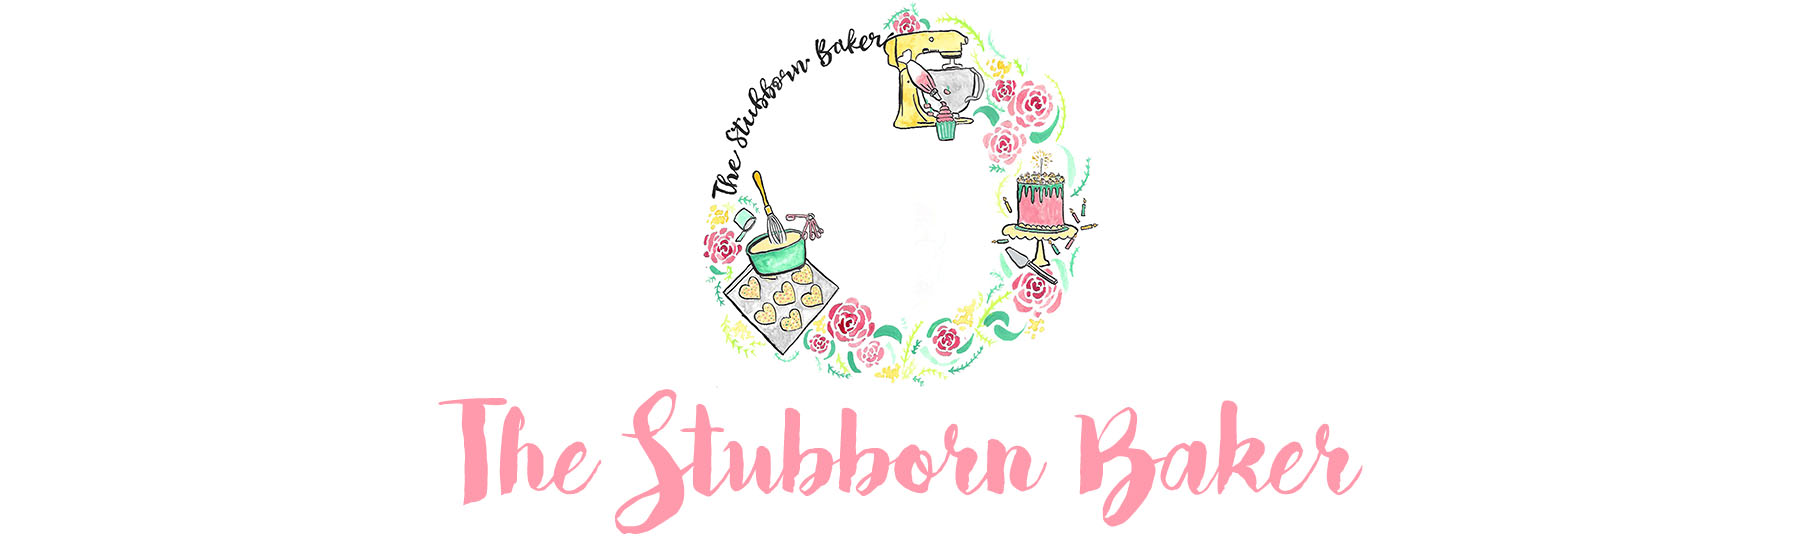 The Stubborn Baker